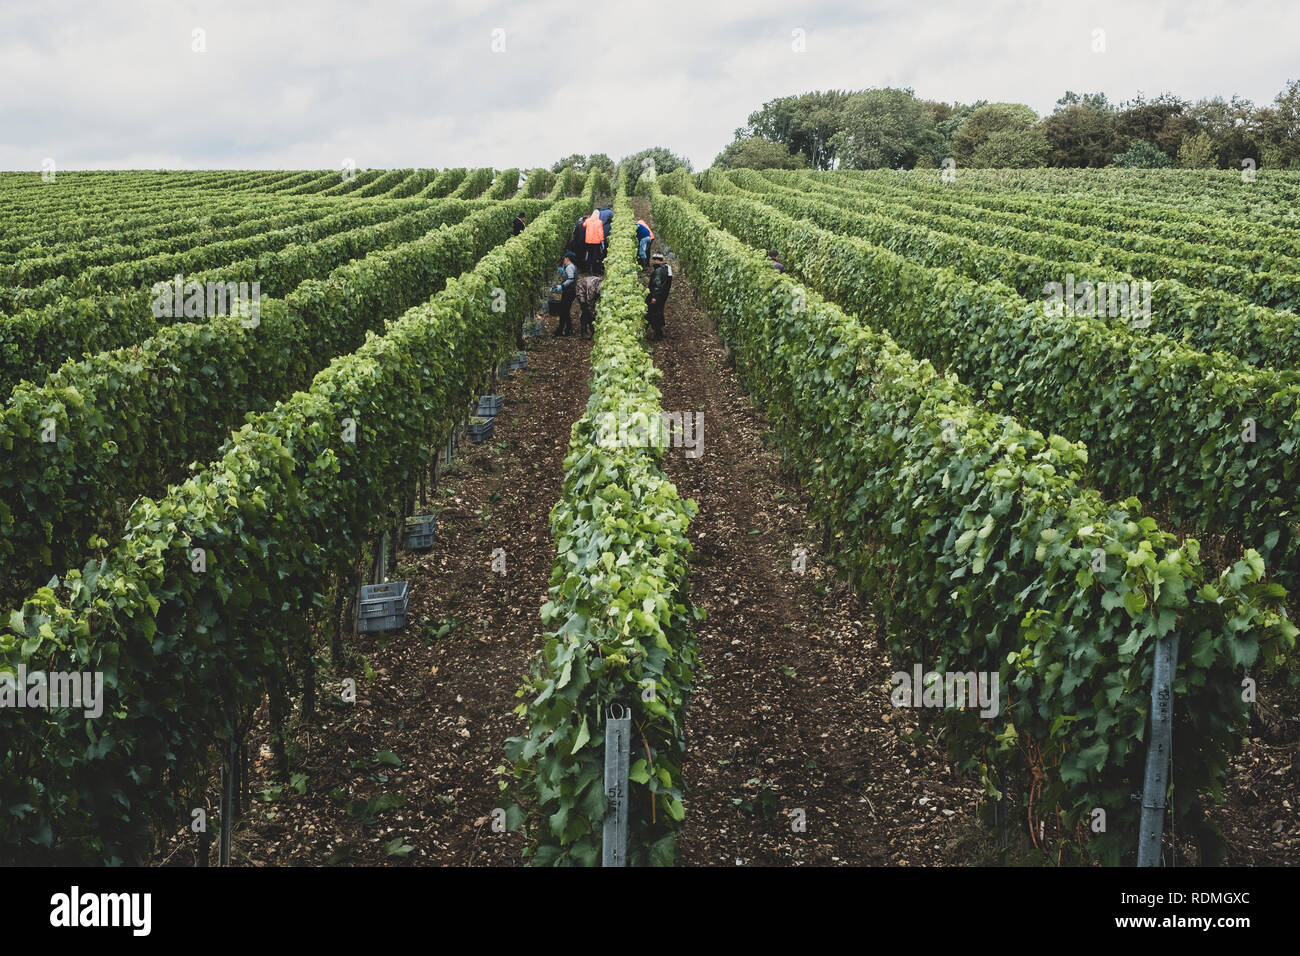 Blick entlang Reihen von Reben auf einem Weinberg mit Menschen Kommissionierung Trauben in der Mitte der Abstand. Stockfoto